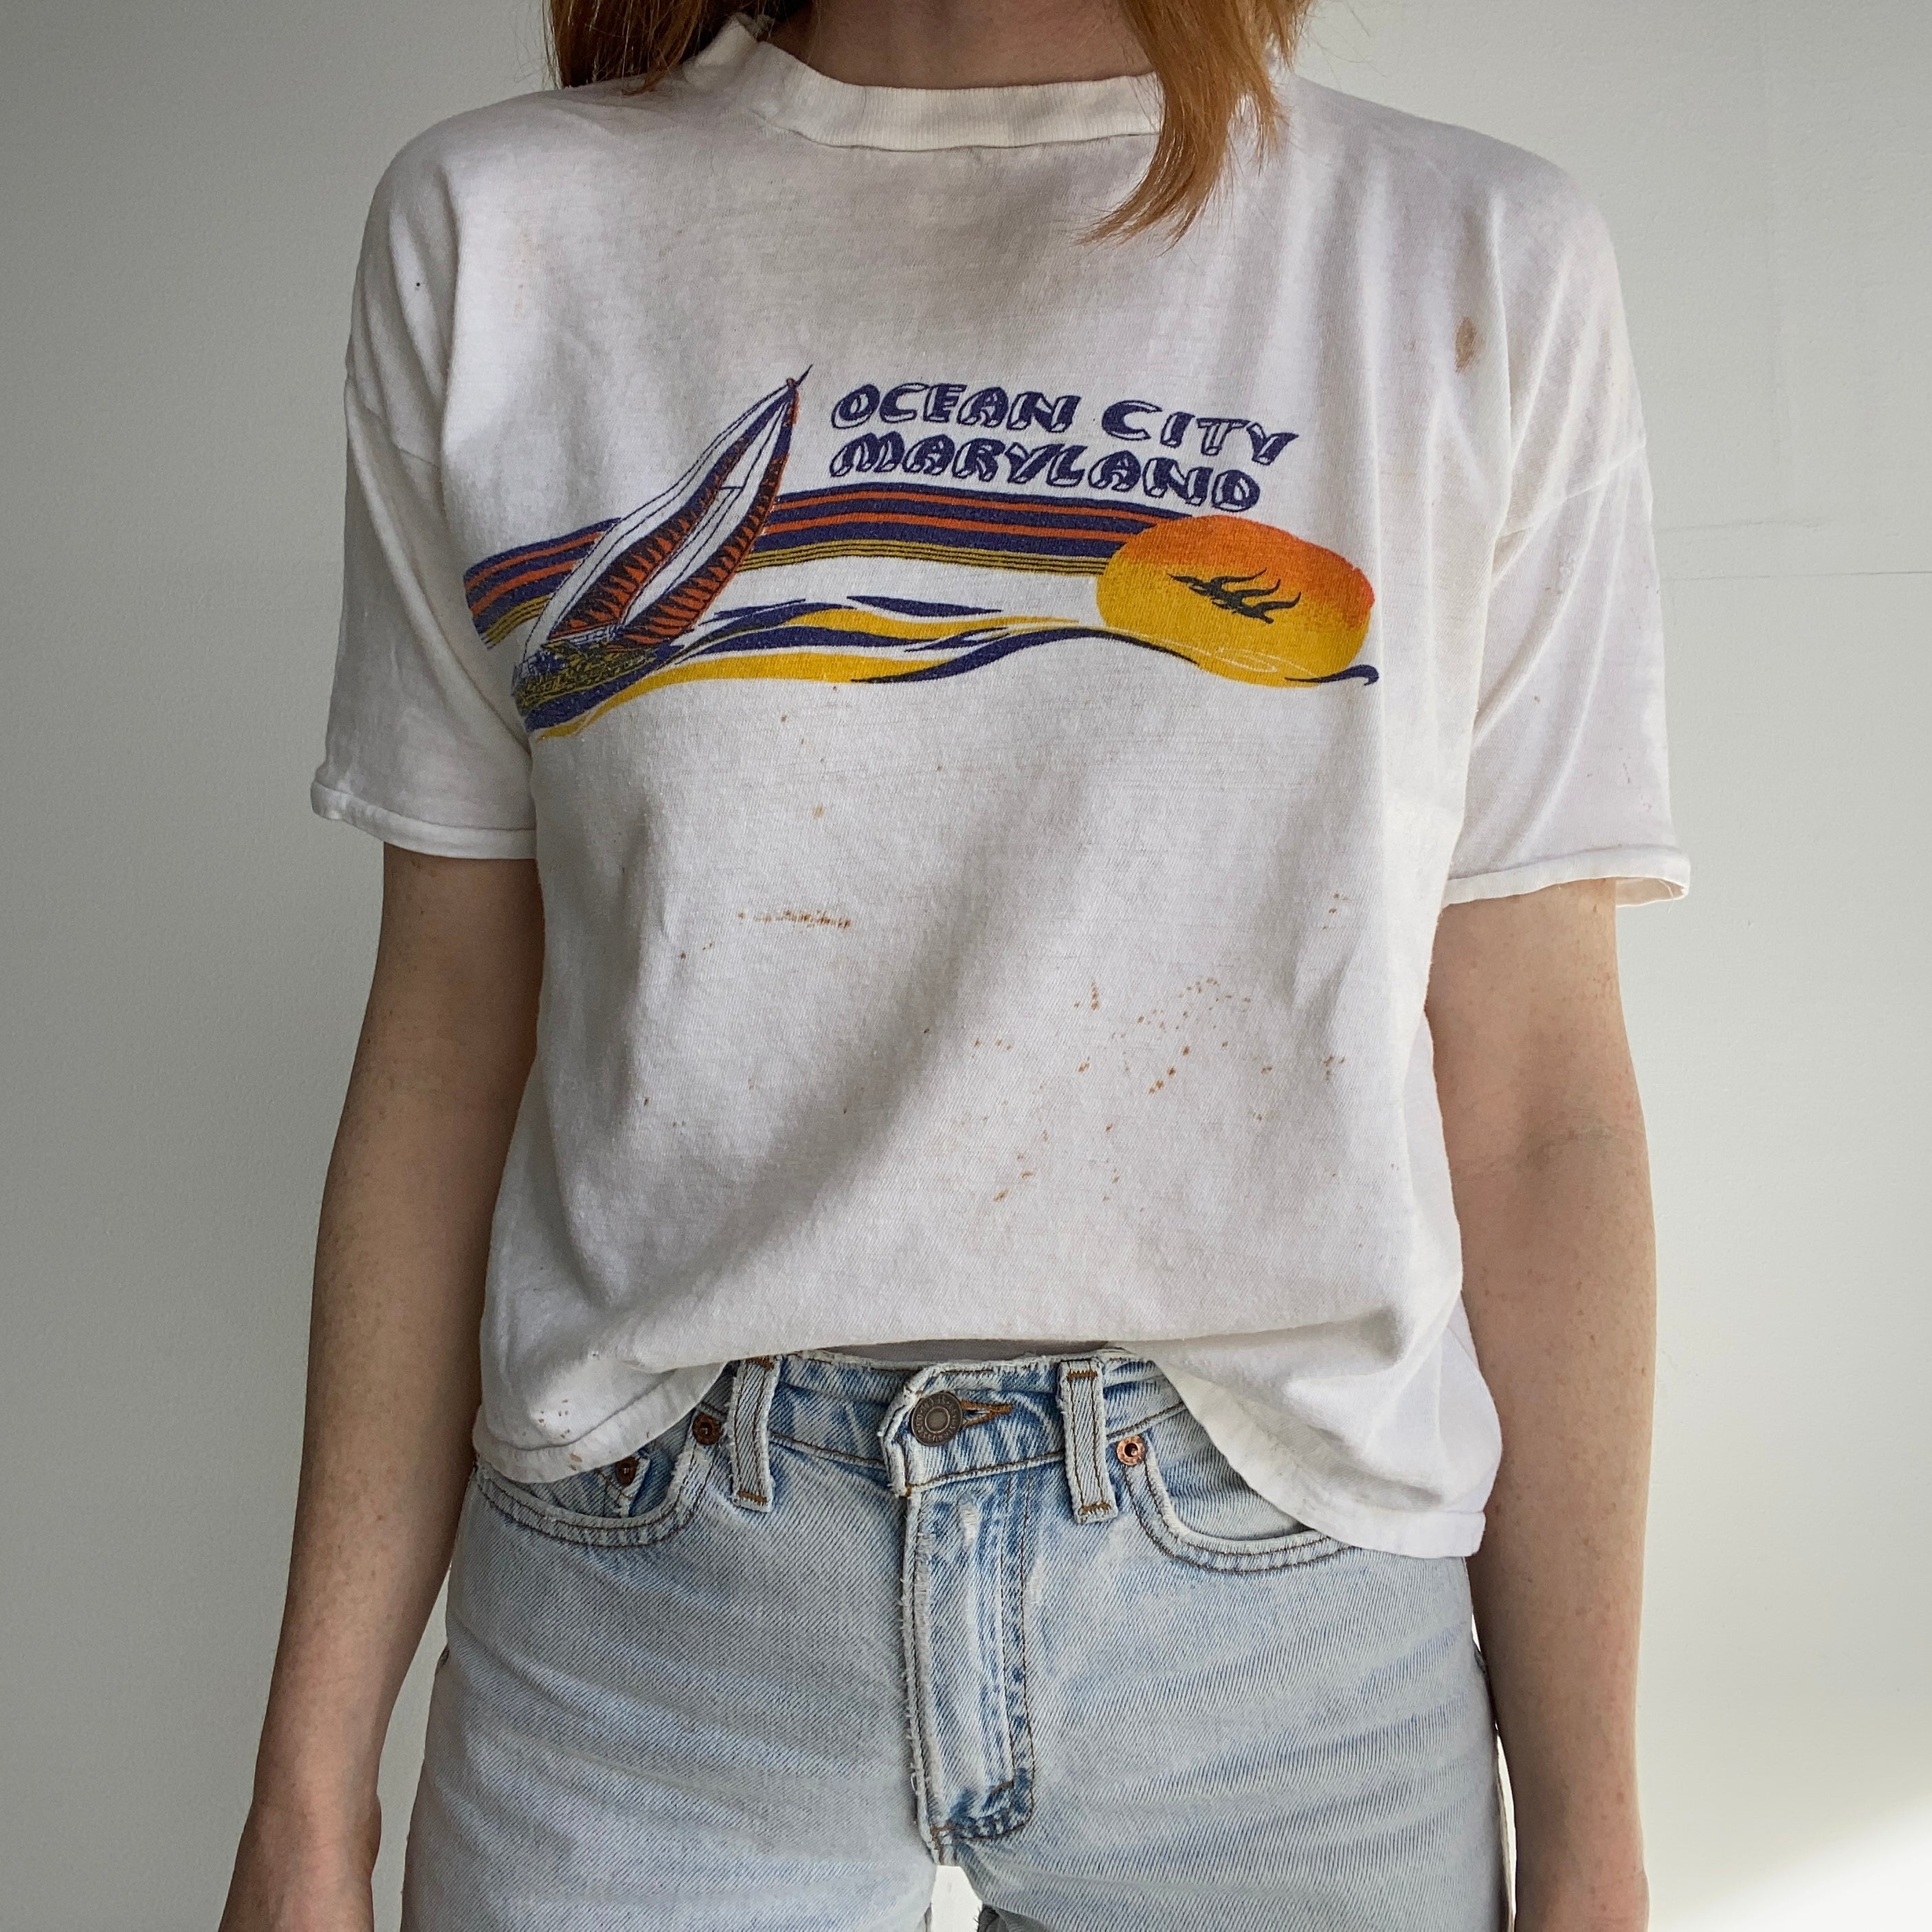 T-shirt touristique en tricot Ocean City Maryland des années 1970 - Boxy